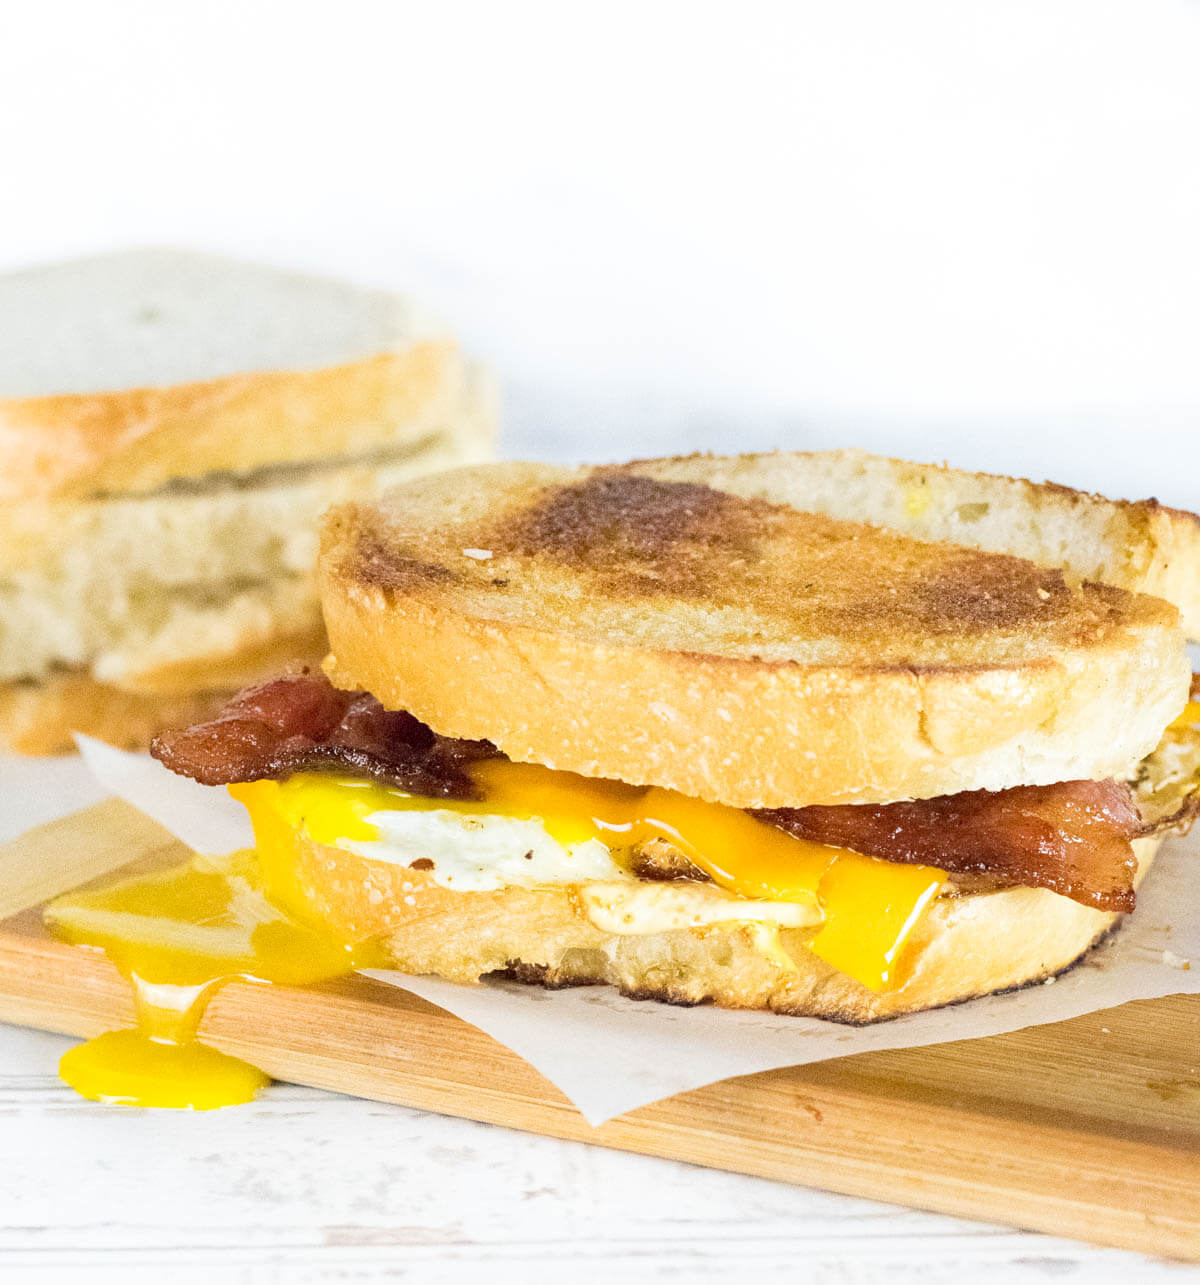 Gourmet egg sandwich